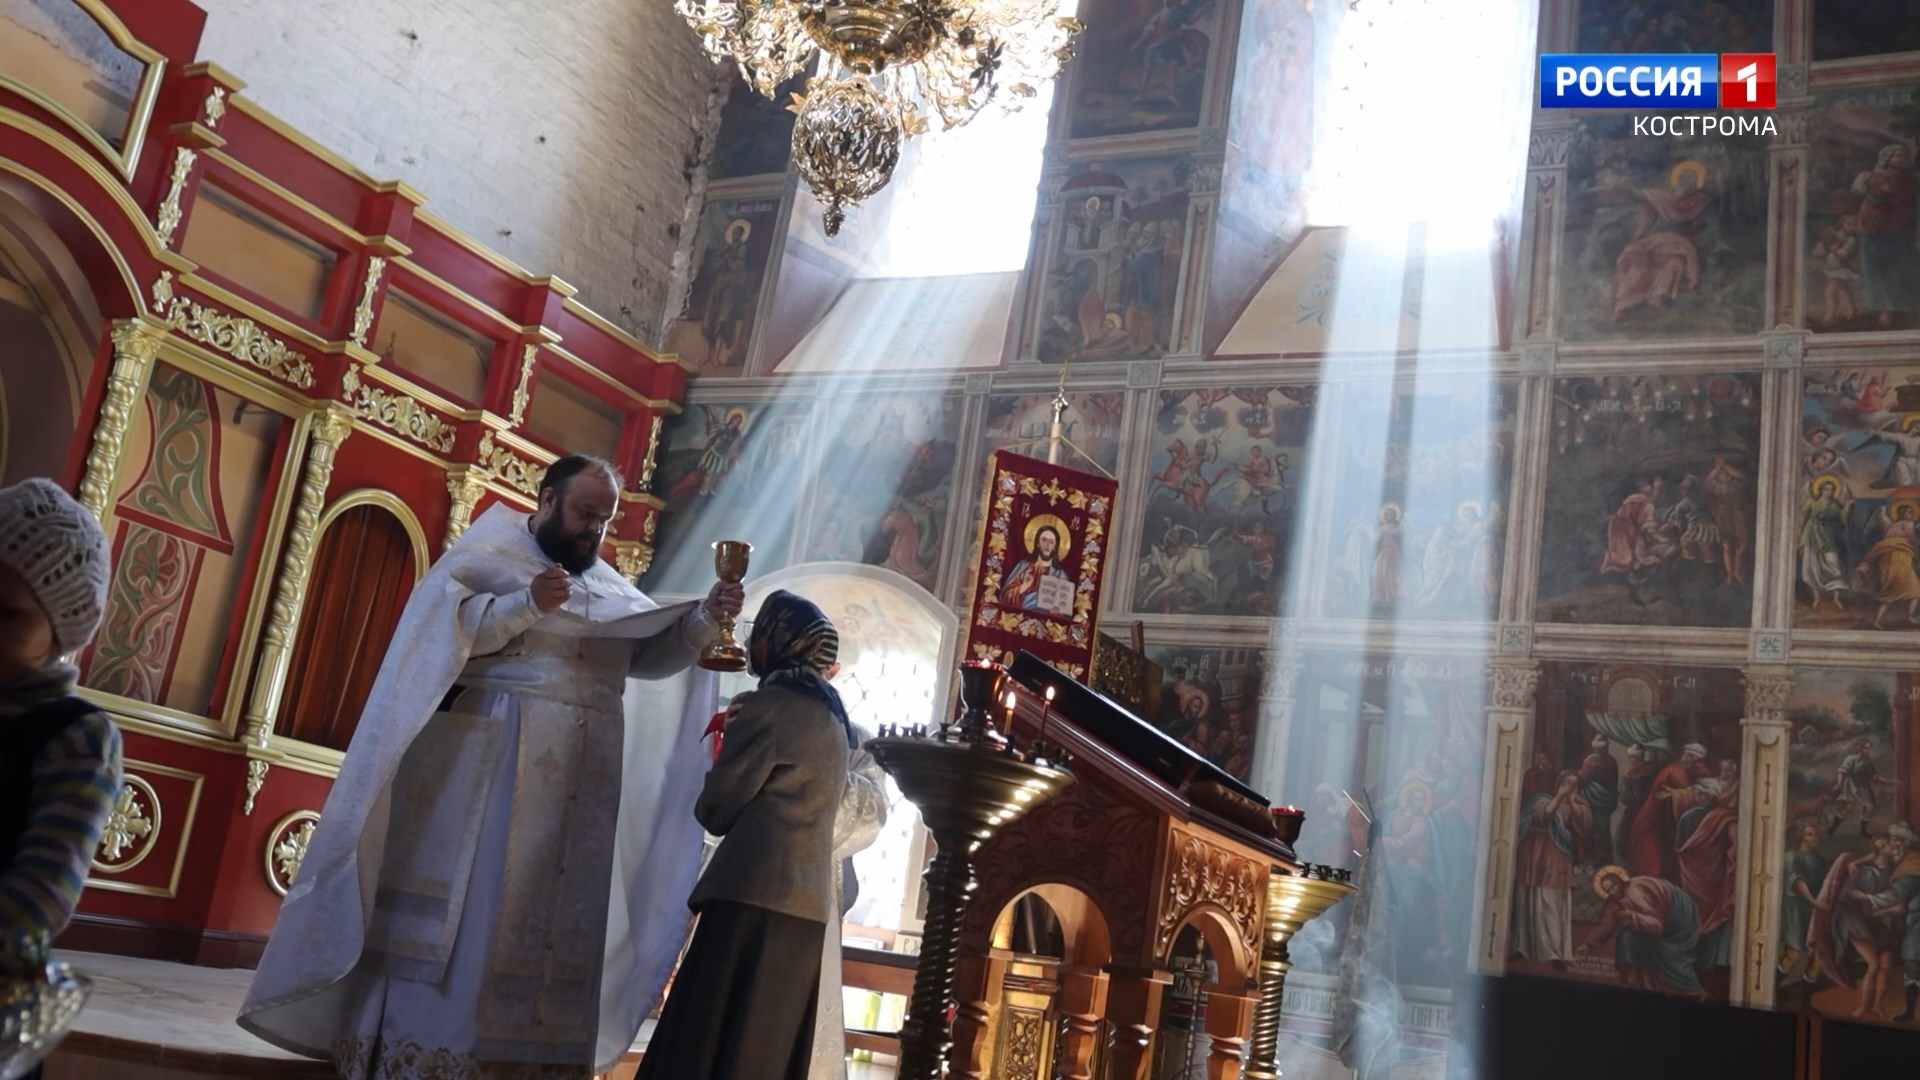 Впервые за сто лет в Ильинском храме под Костромой появился новый иконостас